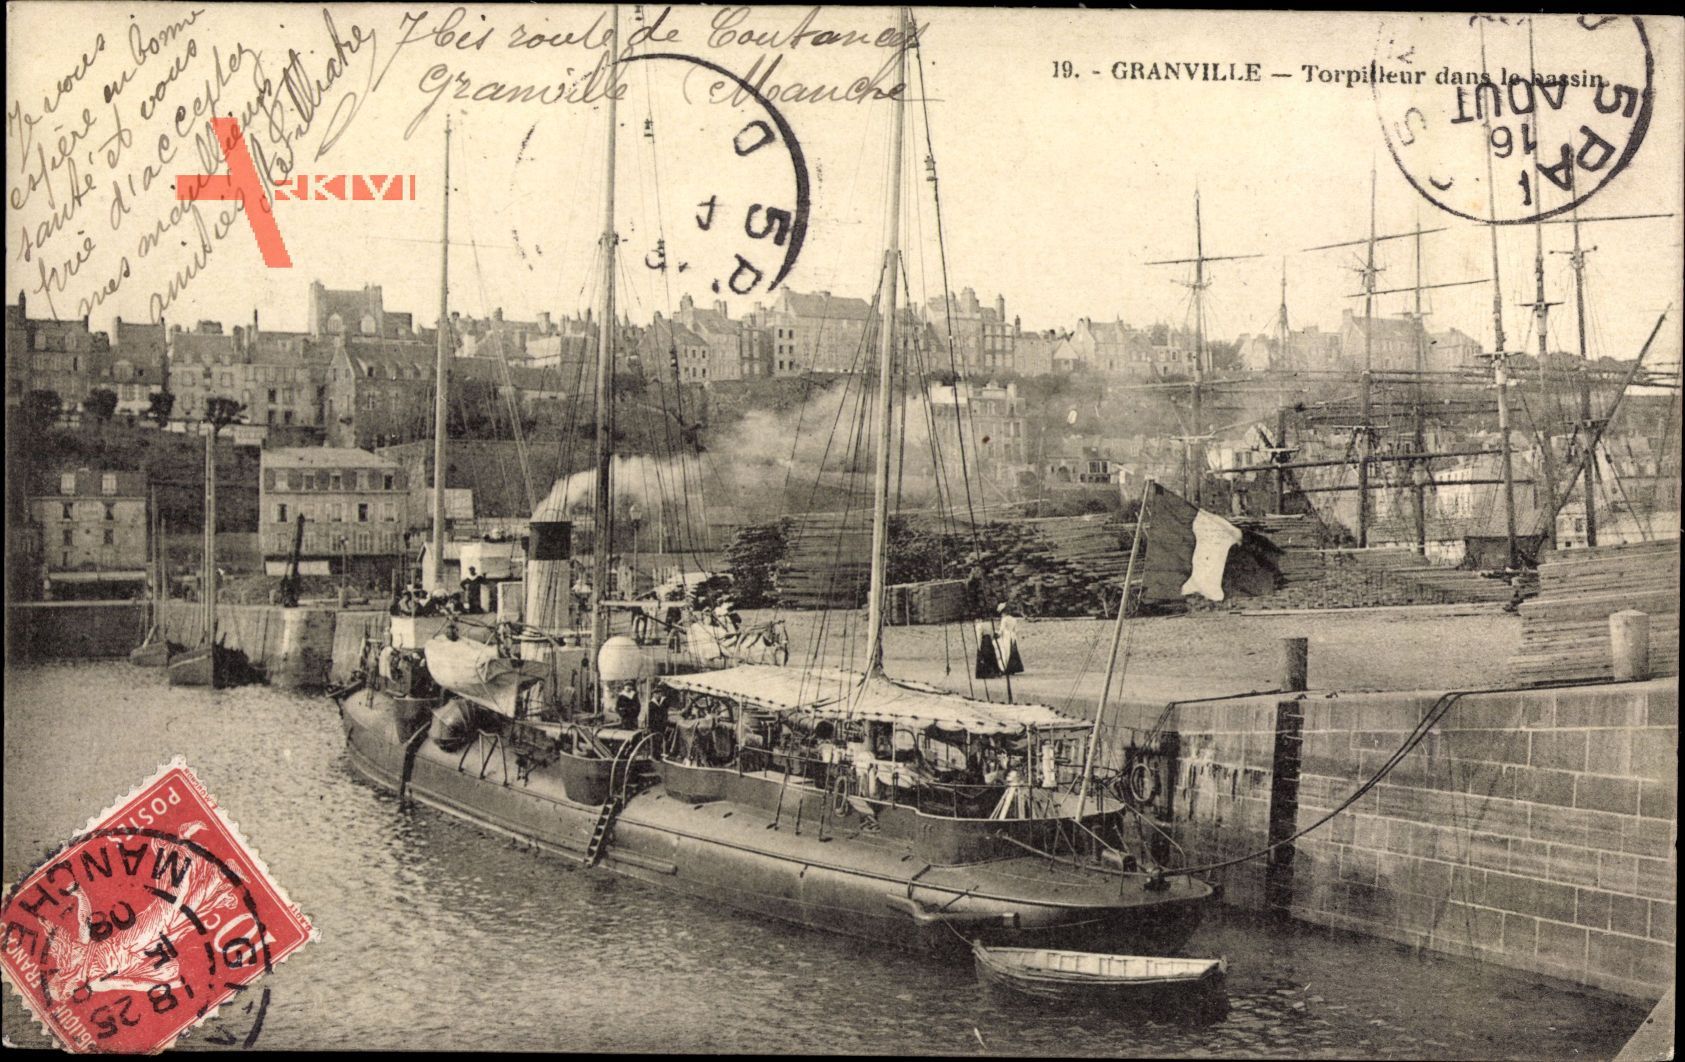 Granville Marne, Torpilleur dans le bassin, Torpedoboot im Hafen